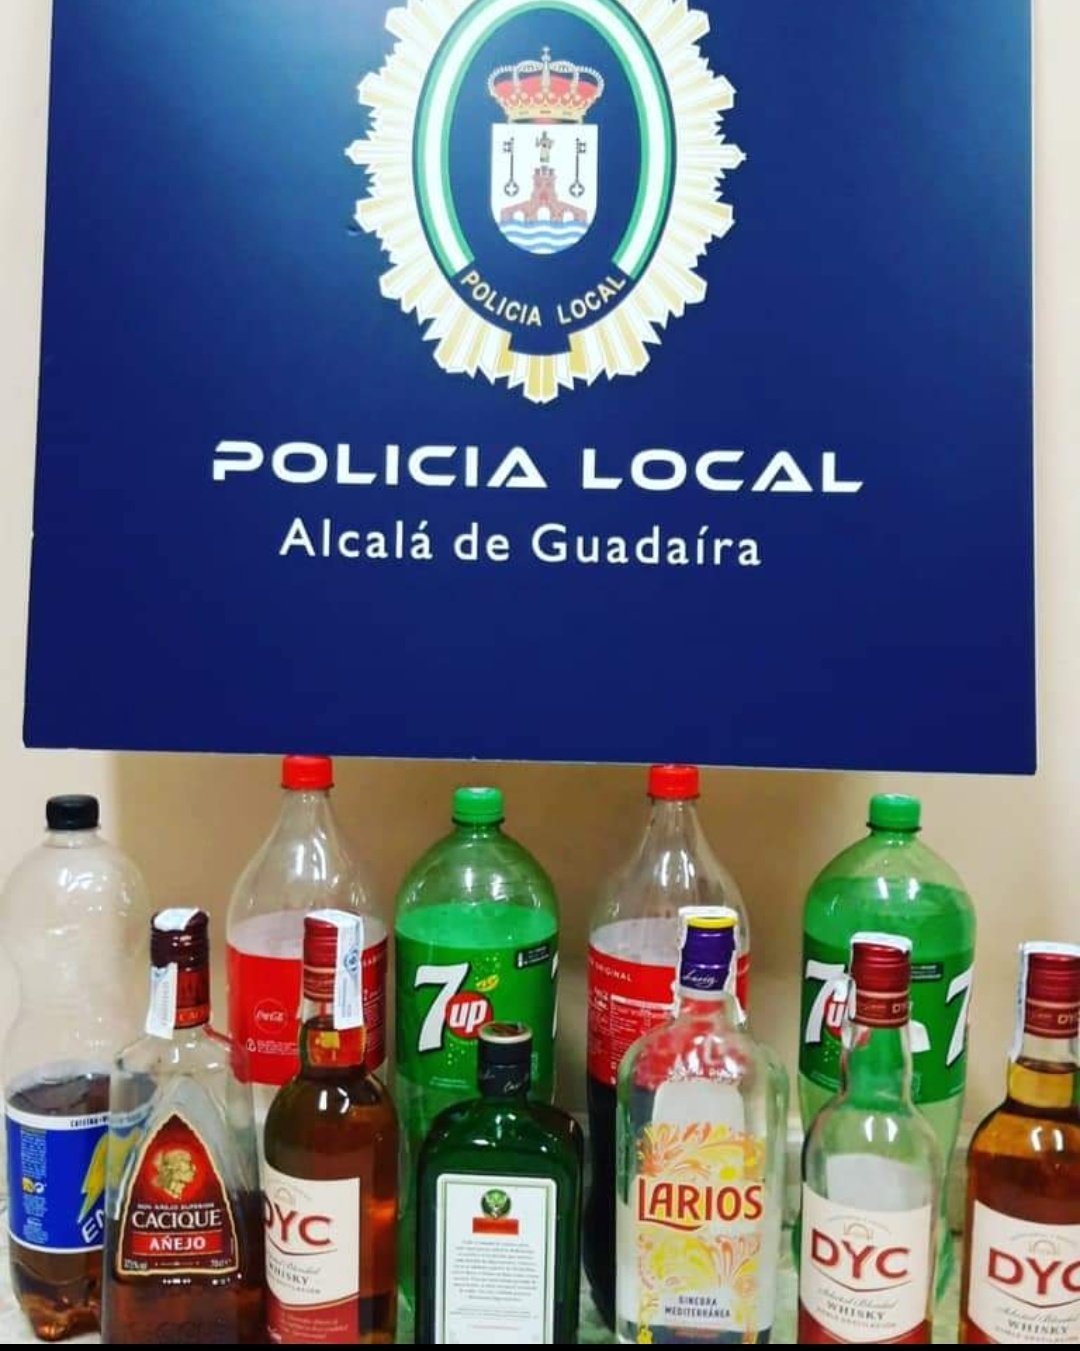 carta carrete Novelista Twitter \ Policia Local Alcalá de Guadaíra Tlf: 092 على تويتر: "La  RESPONSABILIDAD es cosa de TODOS https://t.co/ETZH22rl4s"